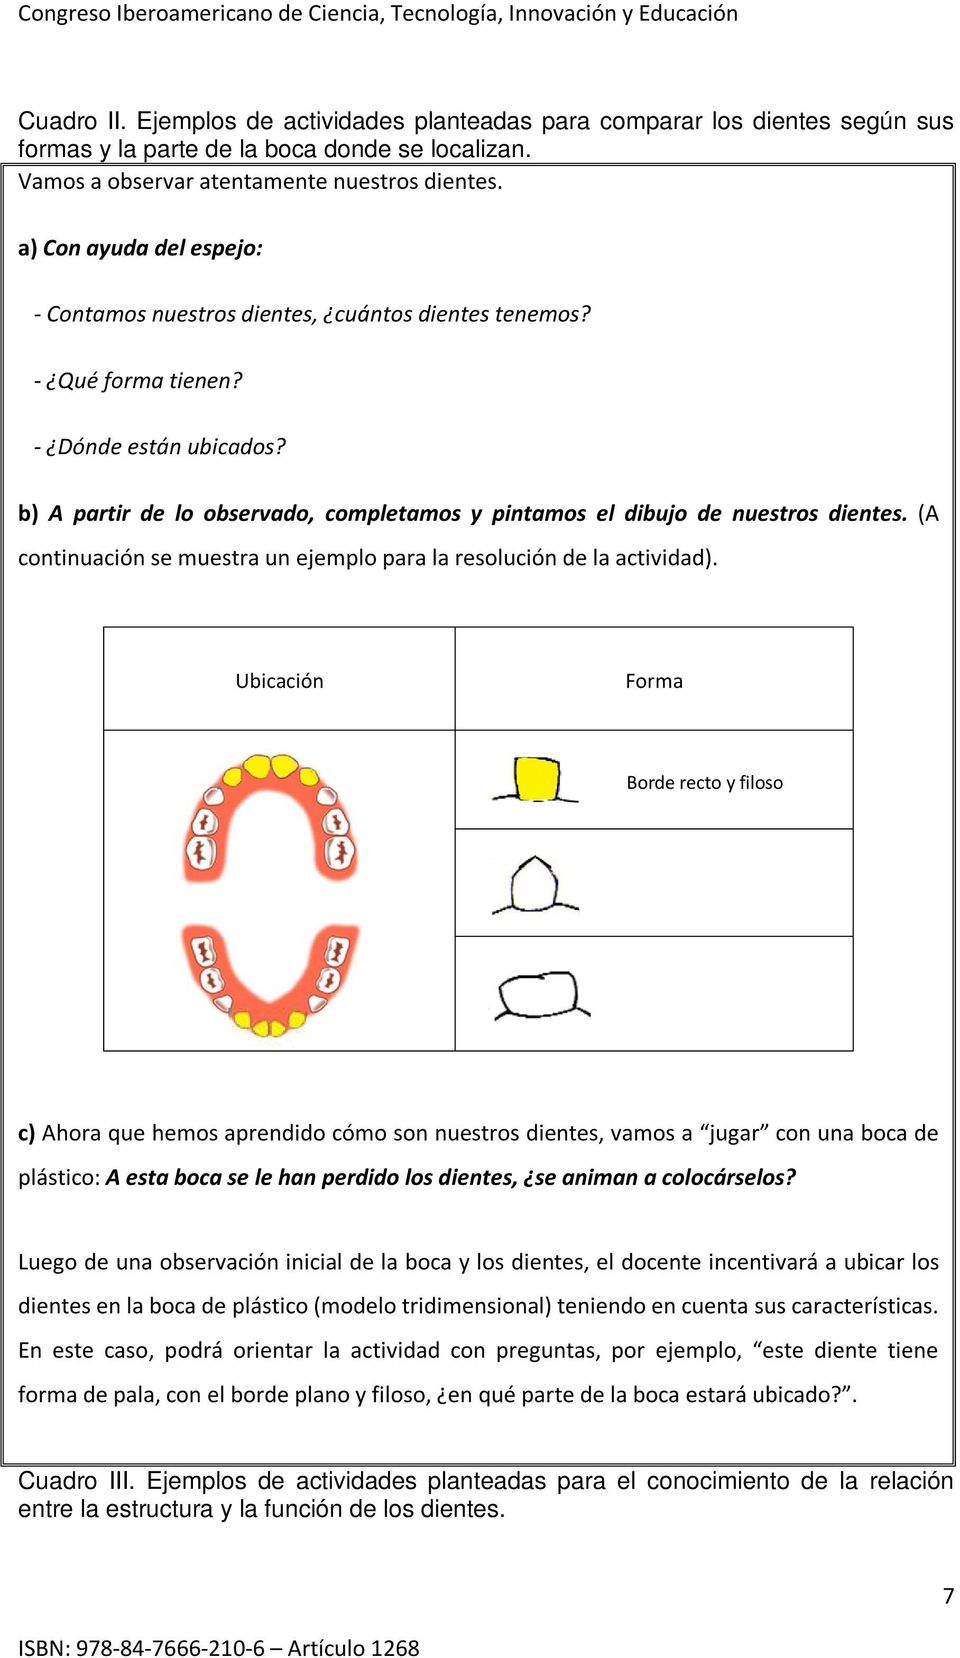 b) A partir de lo observado, completamos y pintamos el dibujo de nuestros dientes. (A continuación se muestra un ejemplo para la resolución de la actividad).